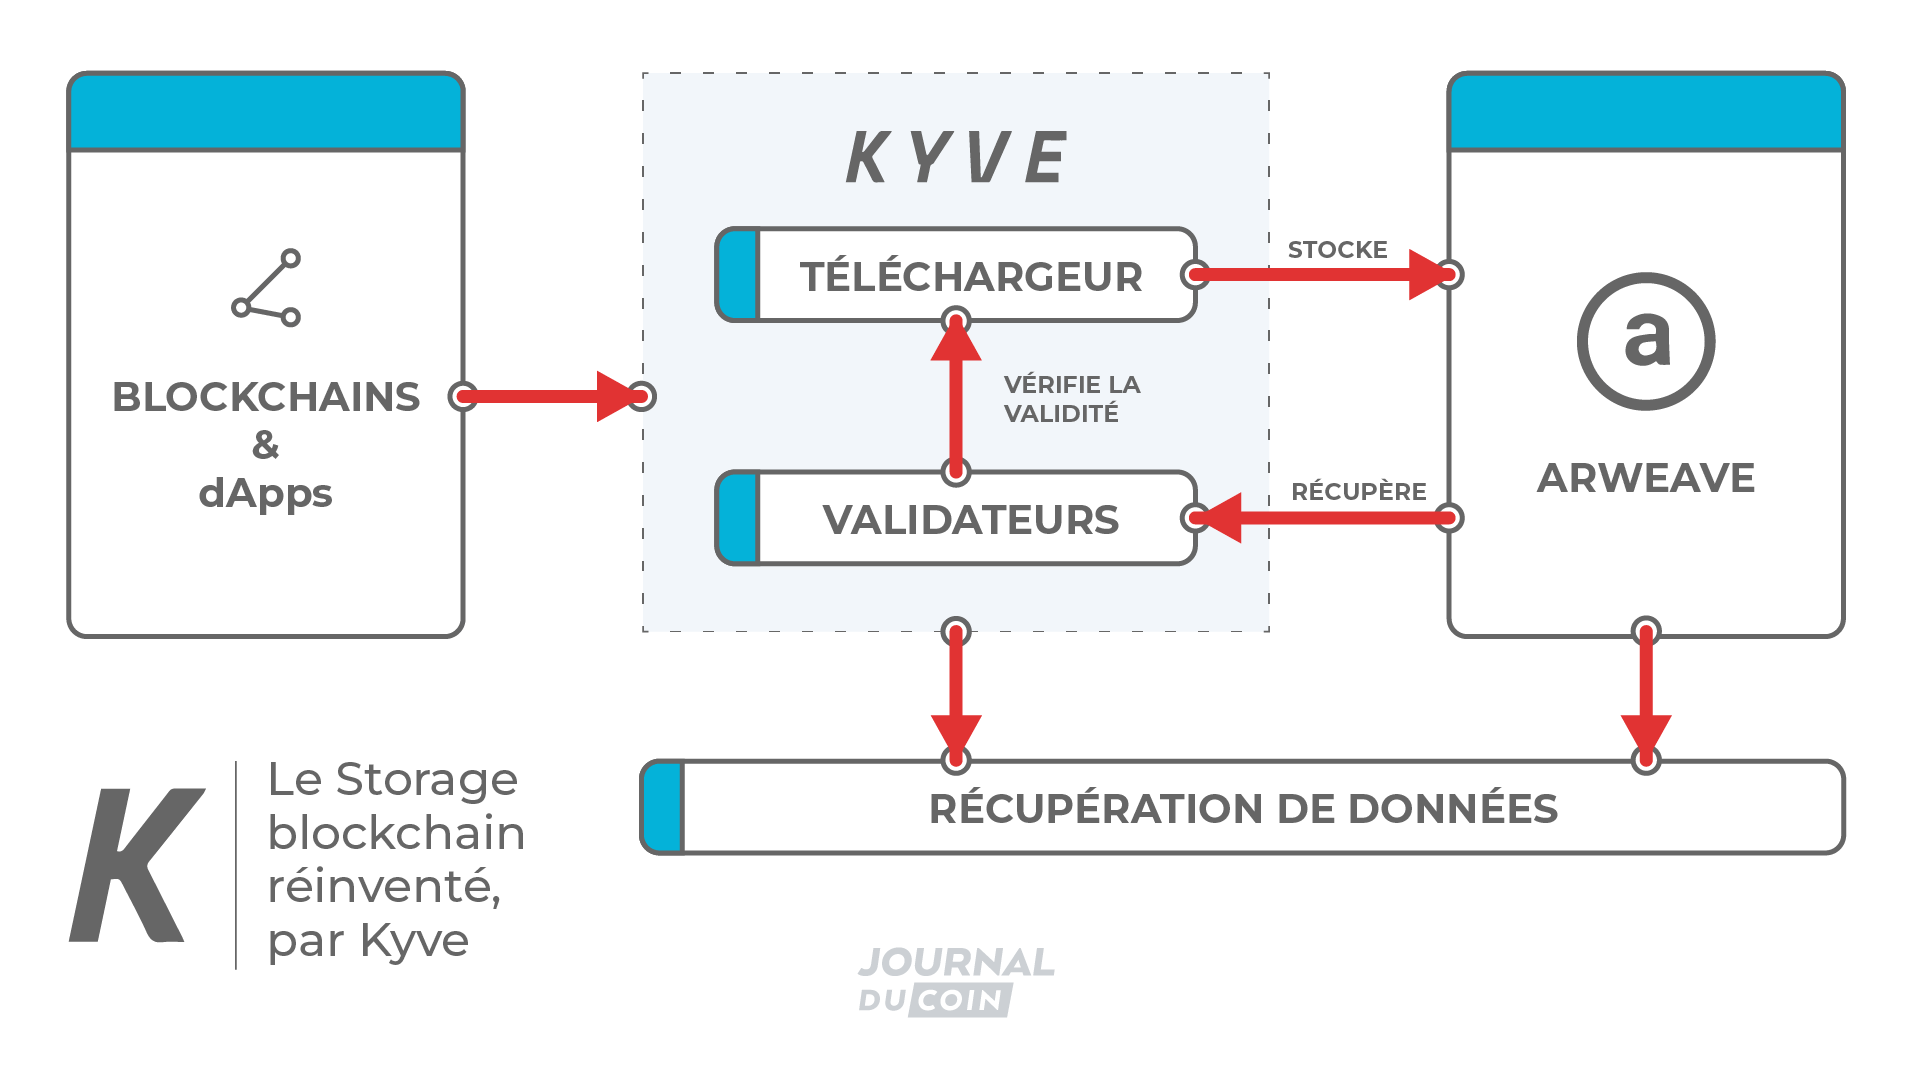 Le stockage blockchain réinventé par KYVE